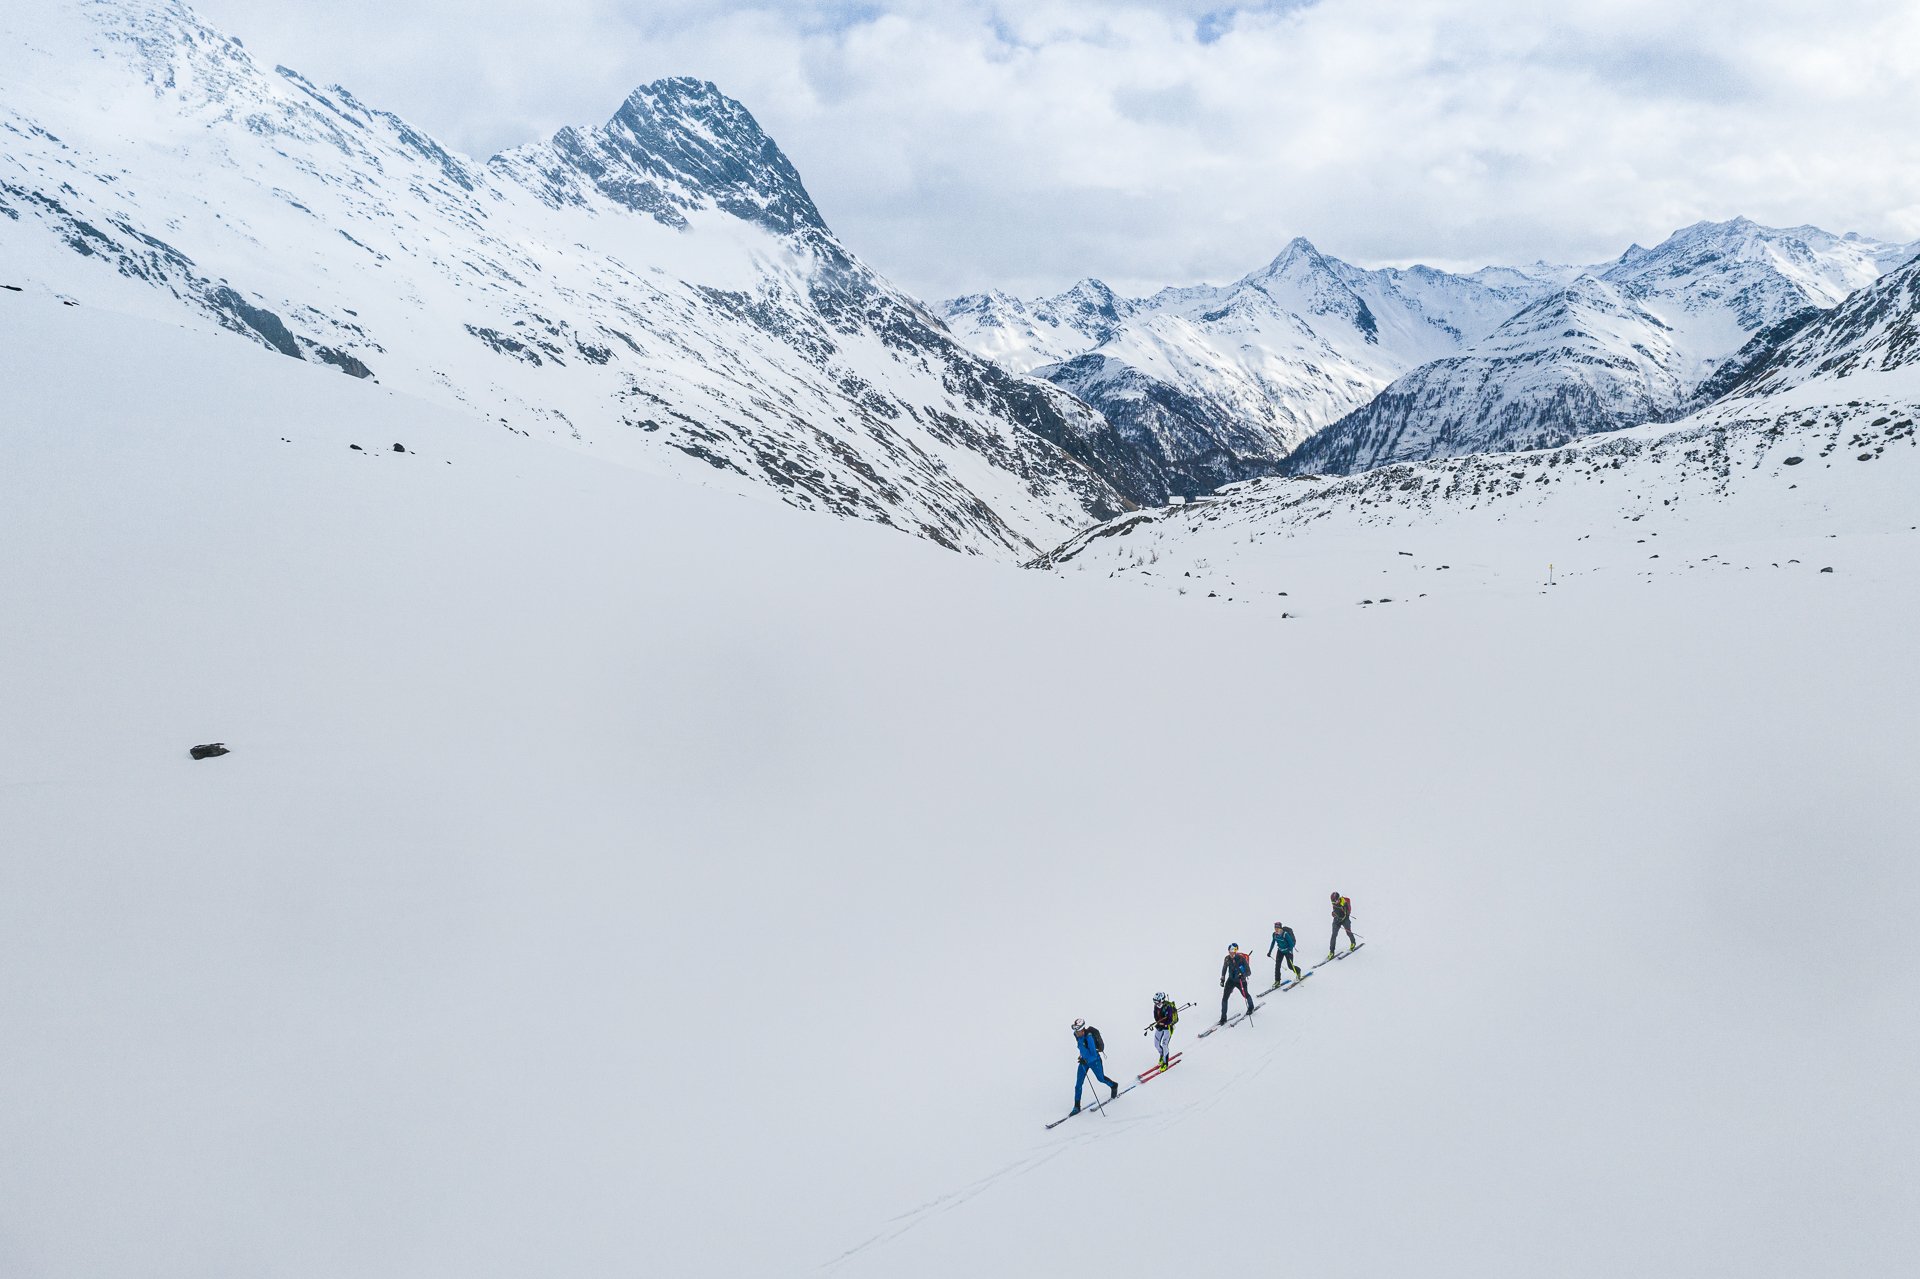 Winter - Suunto Hochtirol 2020: Philipp Reiter und Francois D’haene meistern die "Hoch-Tirol" in Rekordzeit